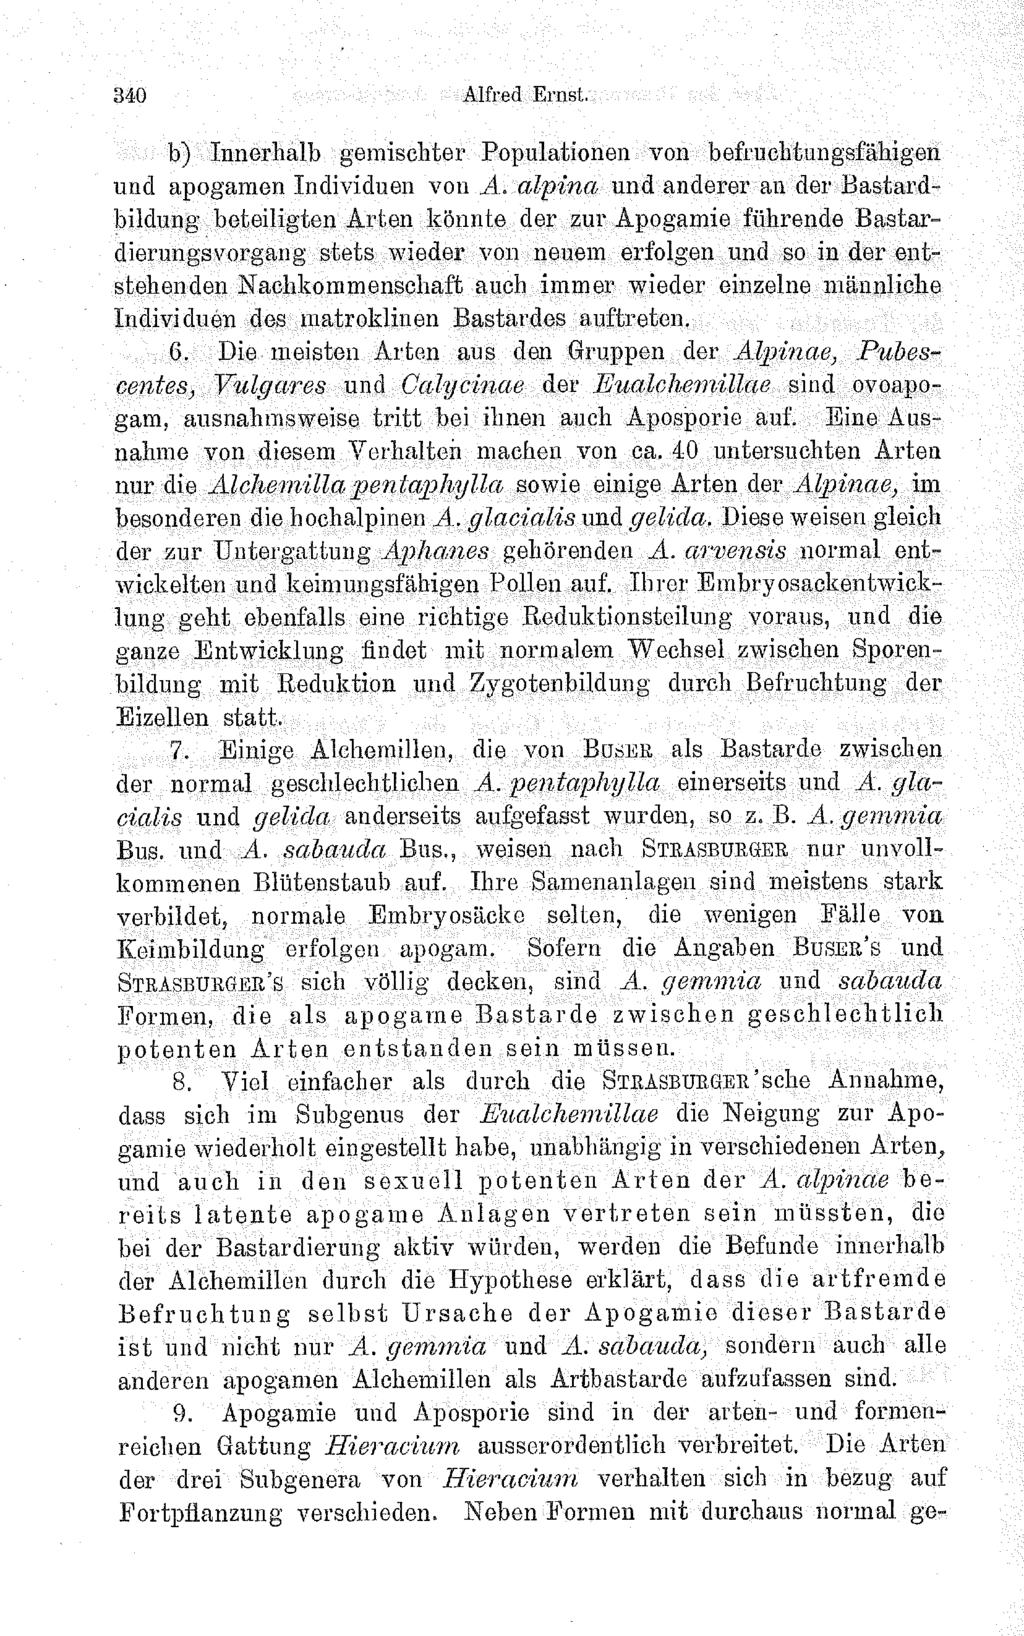 Alfred Ernst. b) Innerhalb gemischter Populationen von befruchtungsfähigen und apogamen Individuen von A. alpine und anderer au der Bastard-.